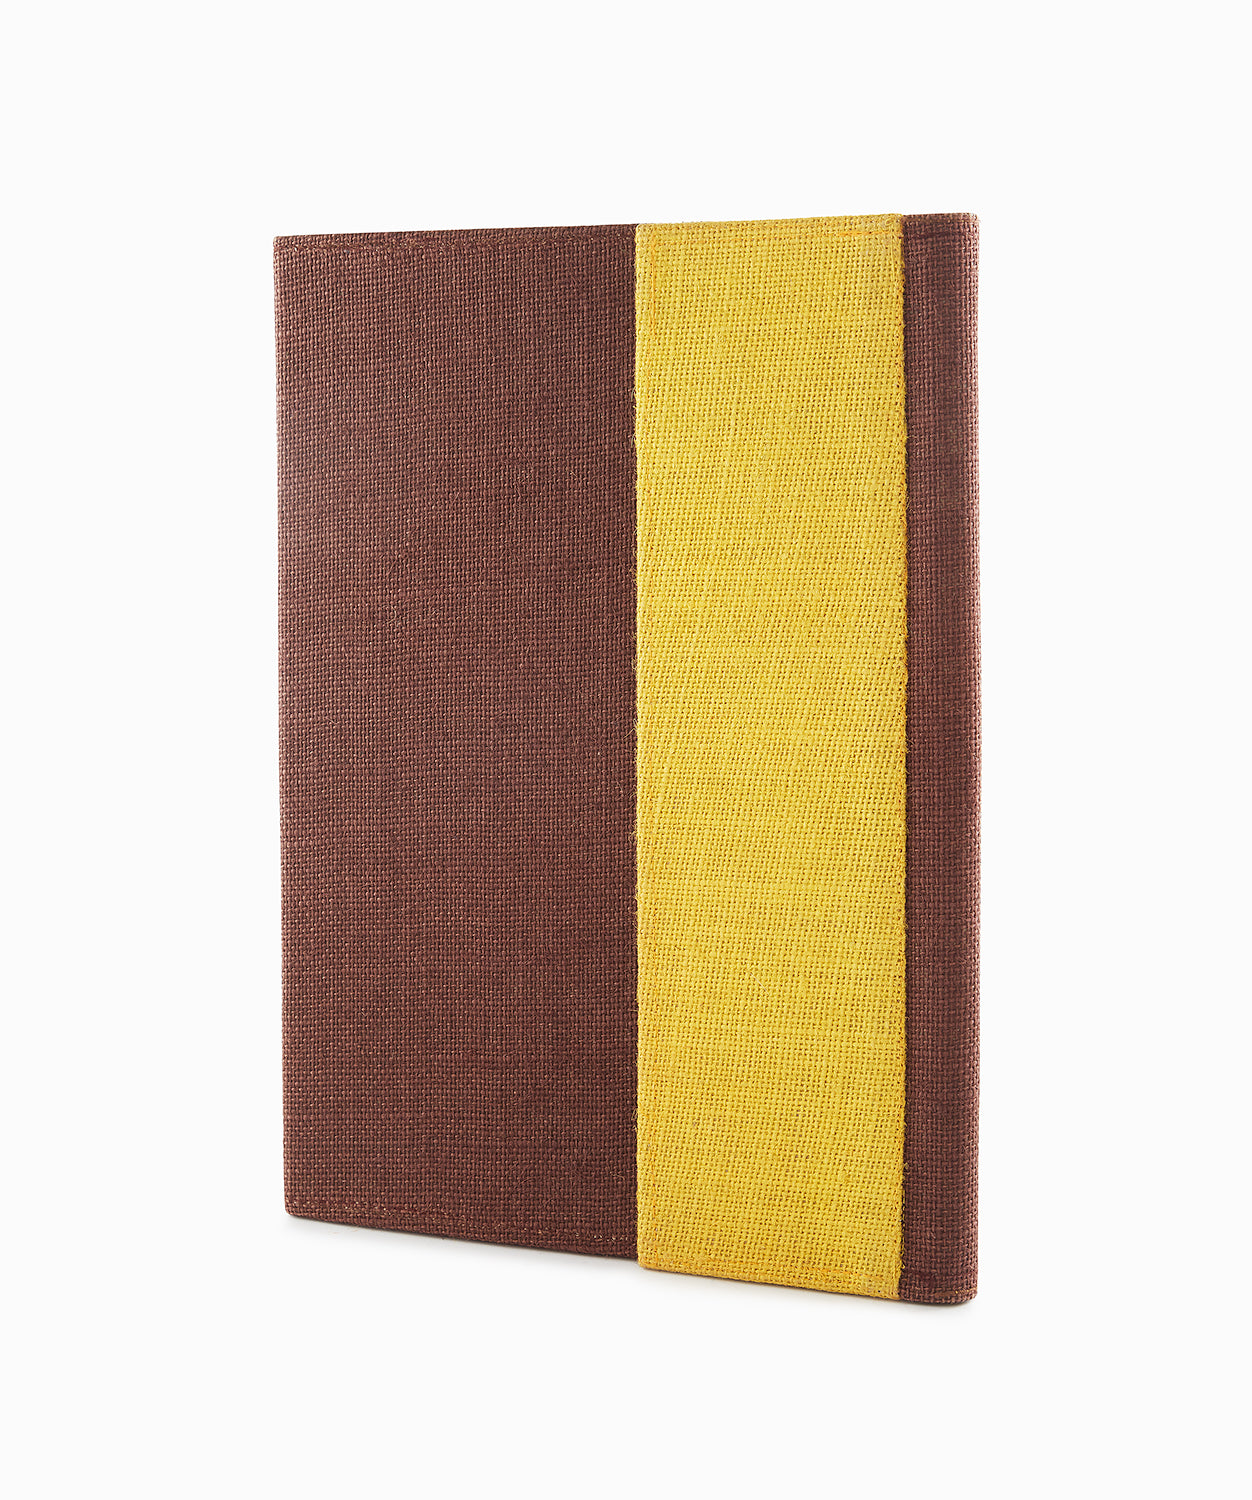 Cedar Brown & Saffron Yellow Jute Folder